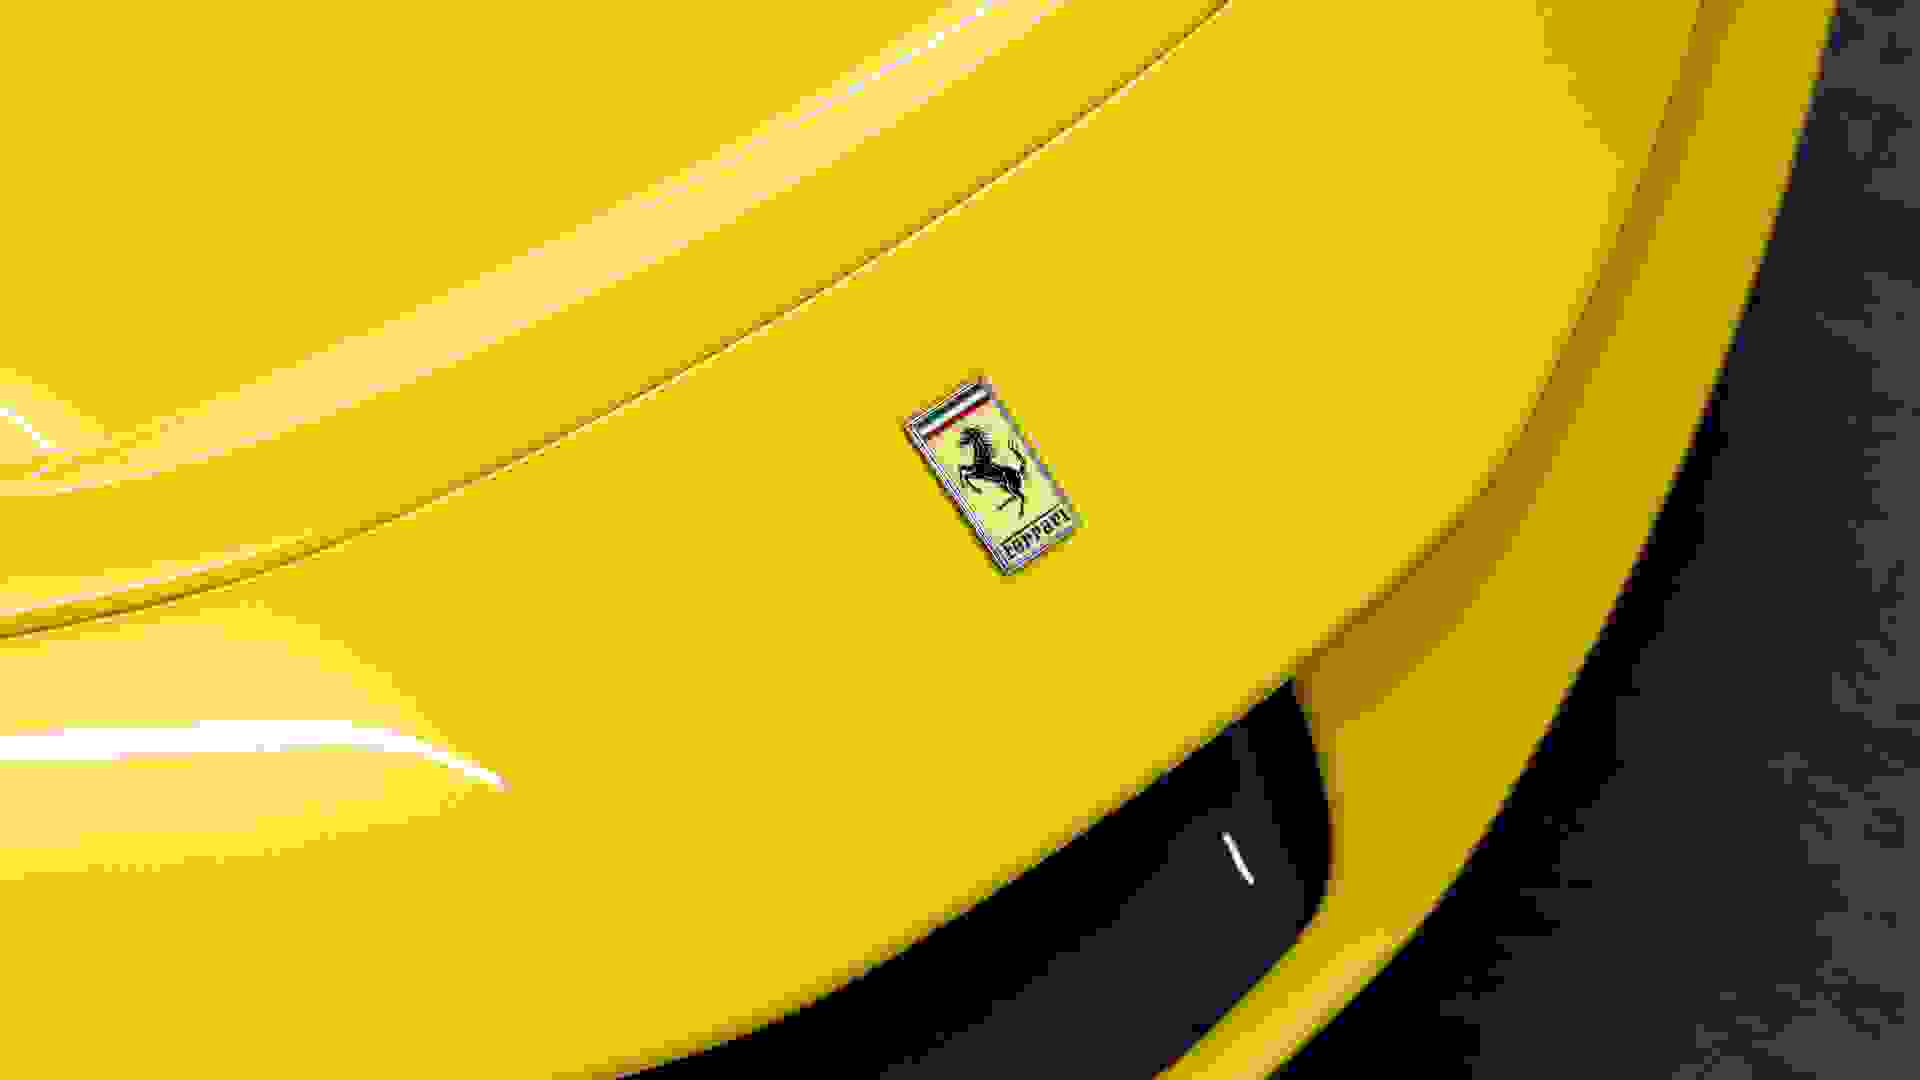 Ferrari SF90 Stradale Photo 674b8d30-9b20-40ec-9c6d-12f0894f9698.jpg